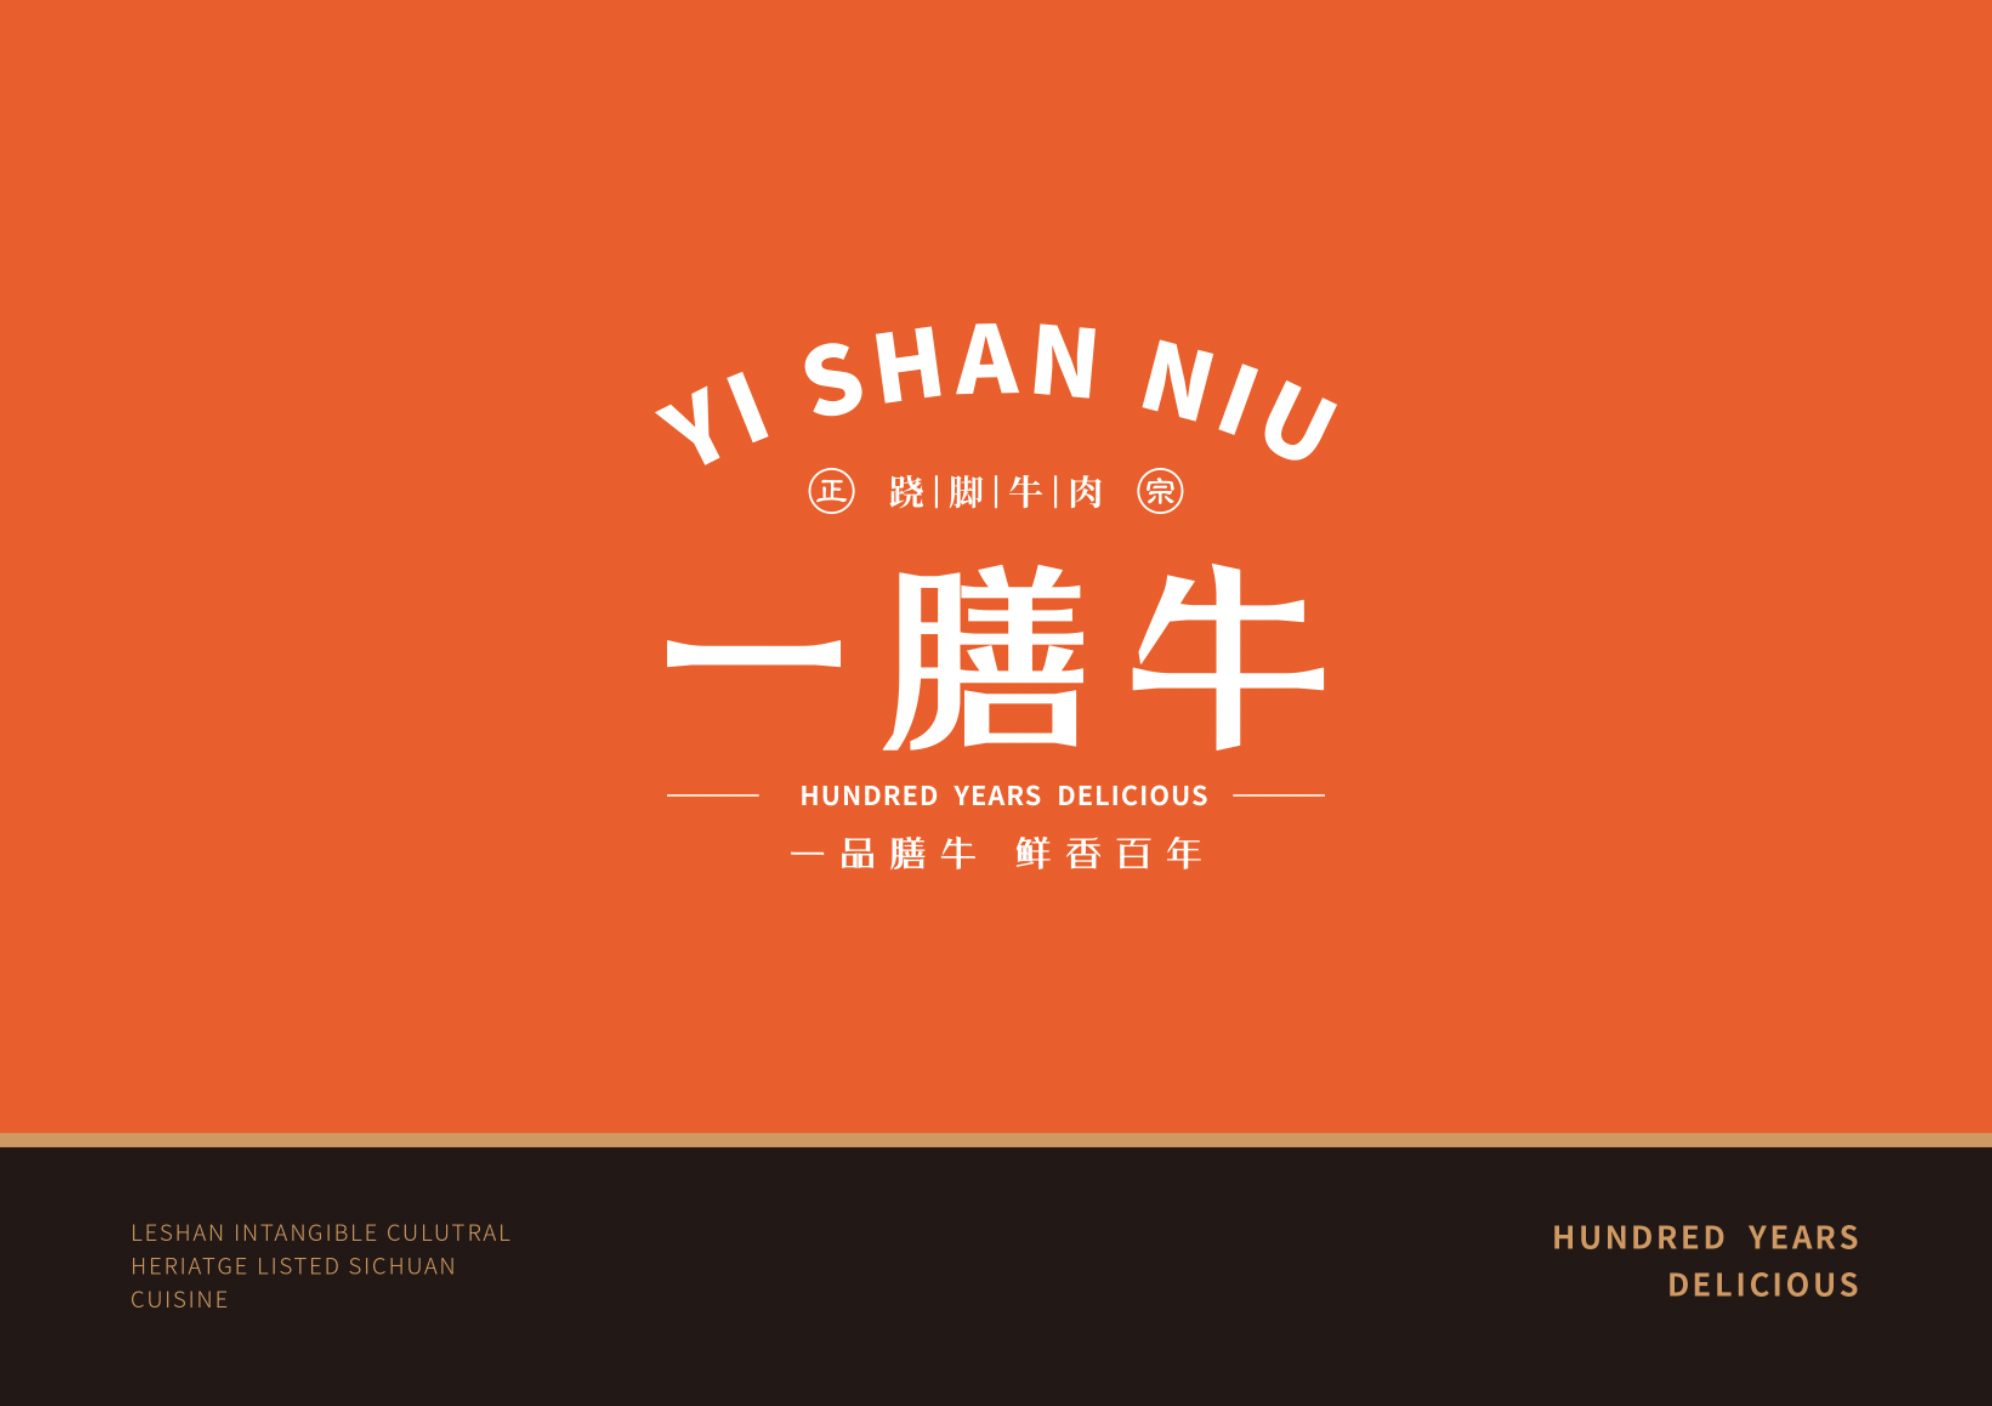 一膳牛品牌策劃設計-餐飲vi設計-杭州達岸品牌策劃設計公司